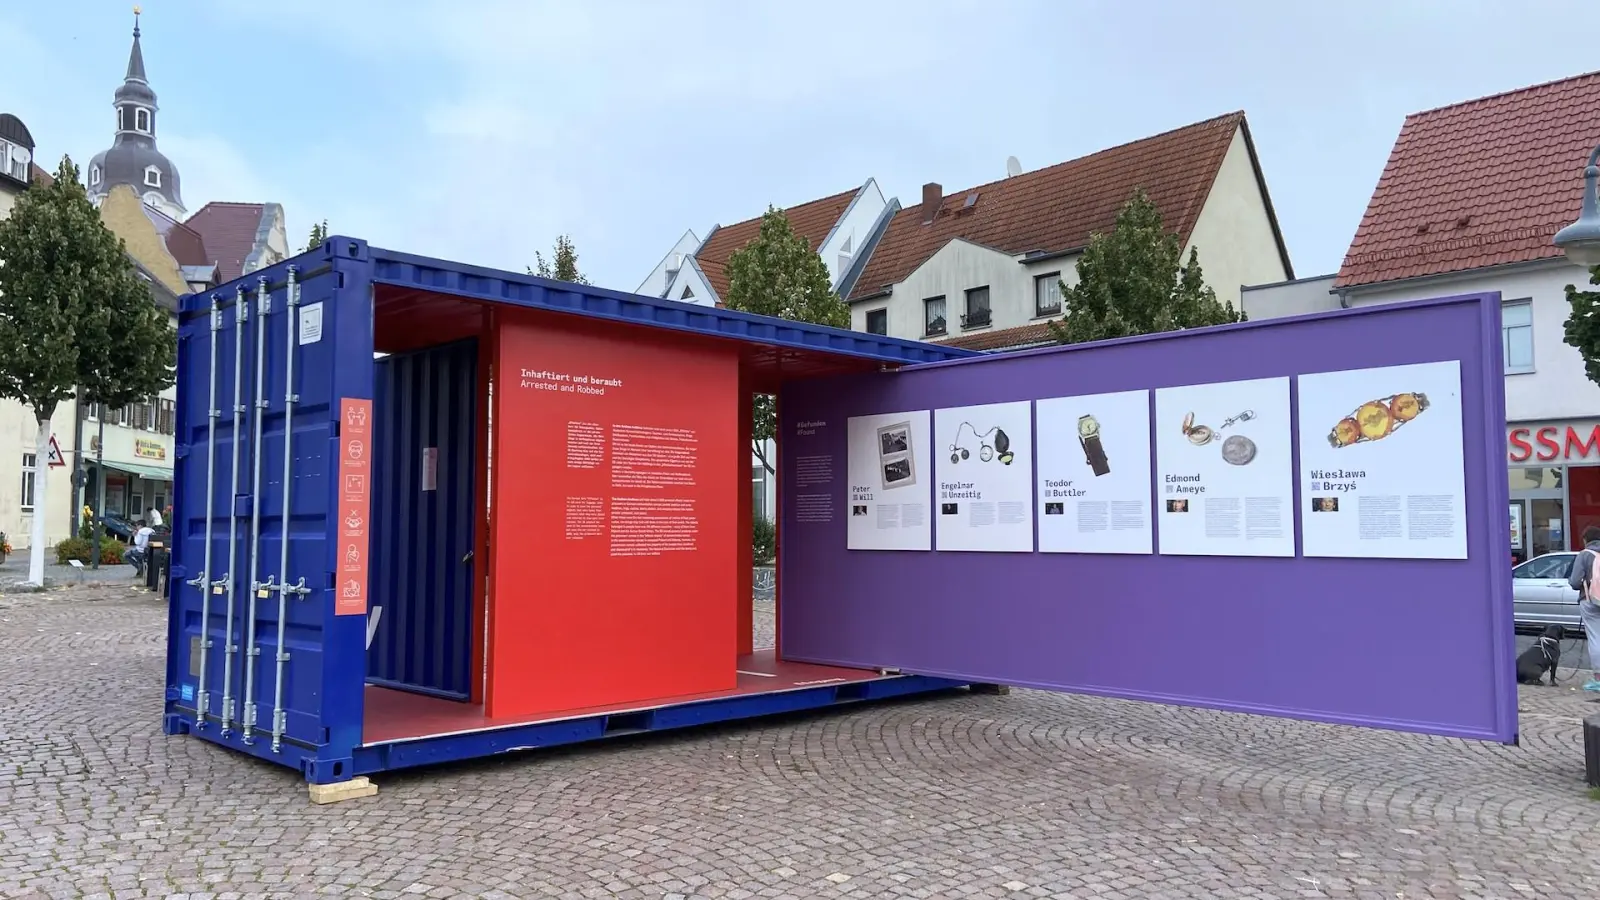 Gestohlene Erinnerung: Wanderausstellung zeigt Besitztümer von KZ-Inhaftierten (Foto: taucha-kompakt.de)